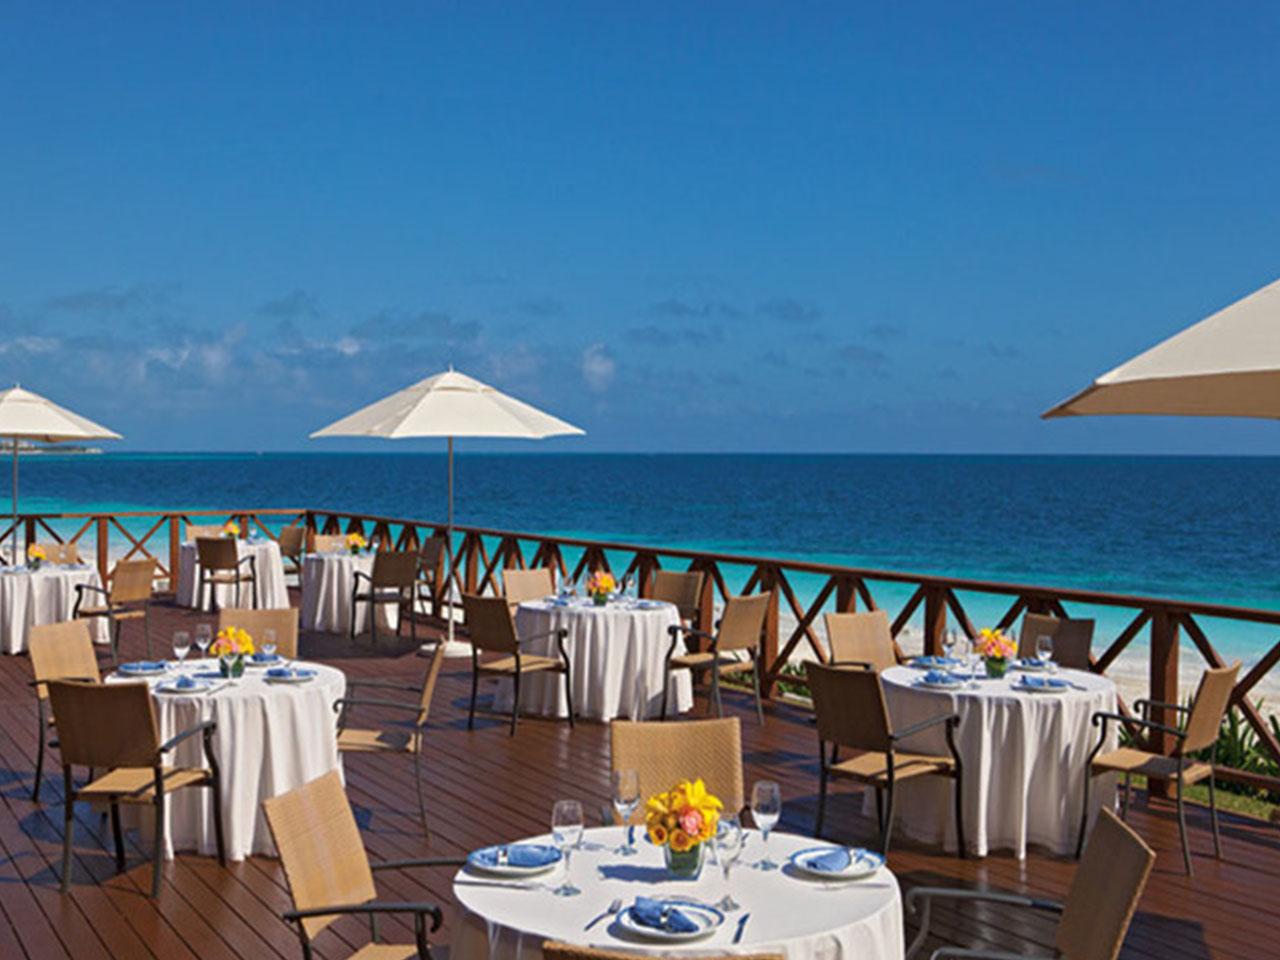 Bodas en la playa - restaurante - Now Sapphire - Paquetes de boda en Riviera maya - Bodas en la Riviera Maya